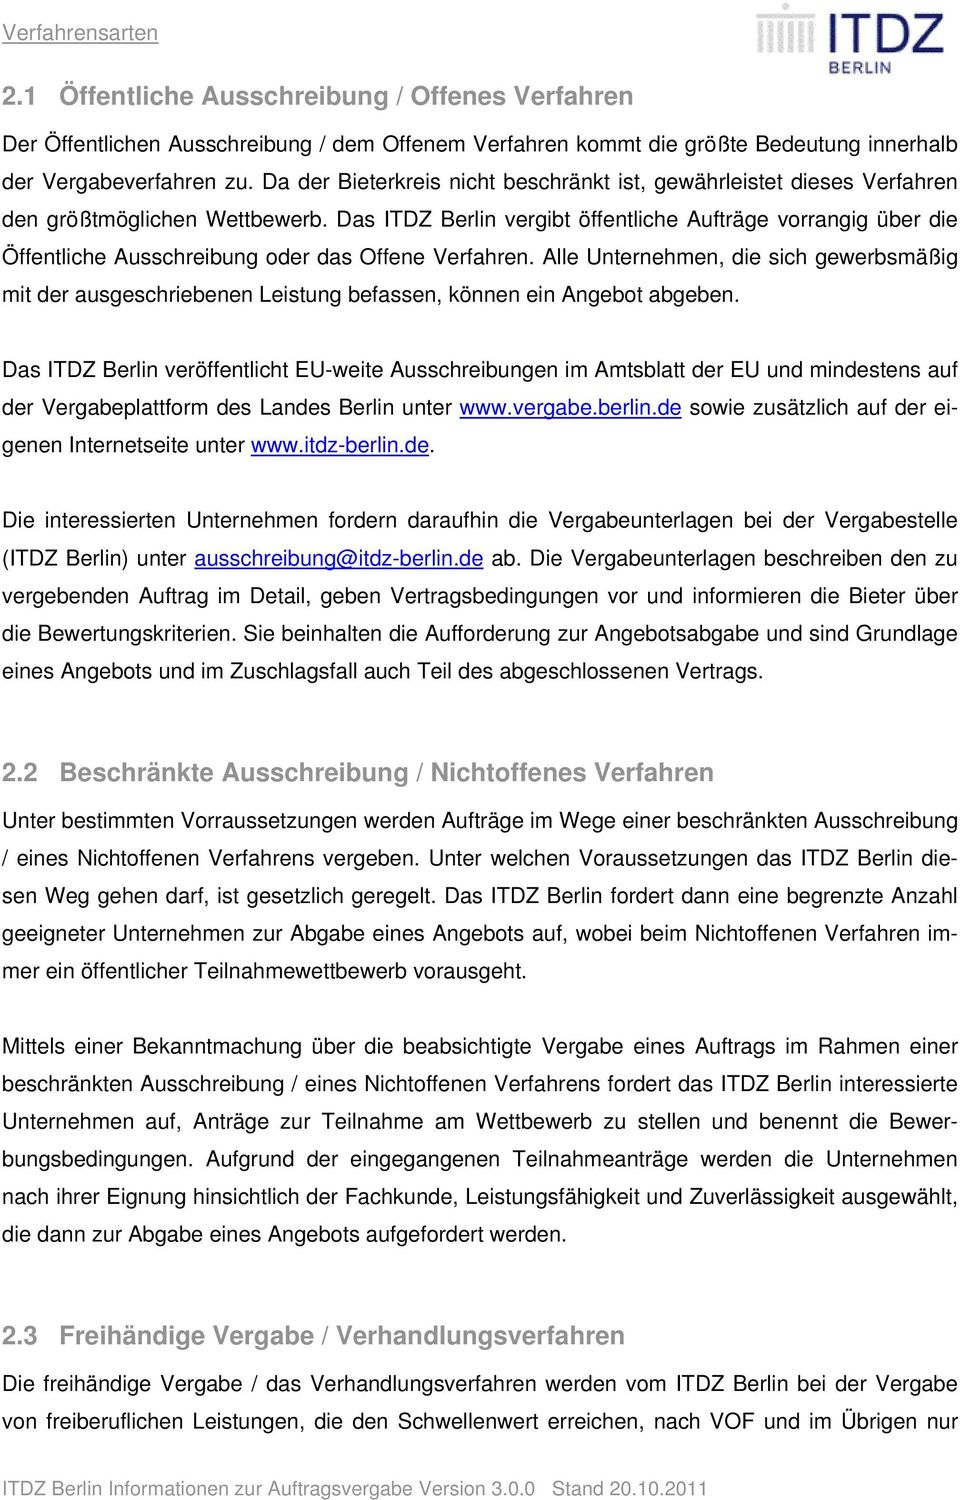 Das ITDZ Berlin vergibt öffentliche Aufträge vorrangig über die Öffentliche Ausschreibung oder das Offene Verfahren.